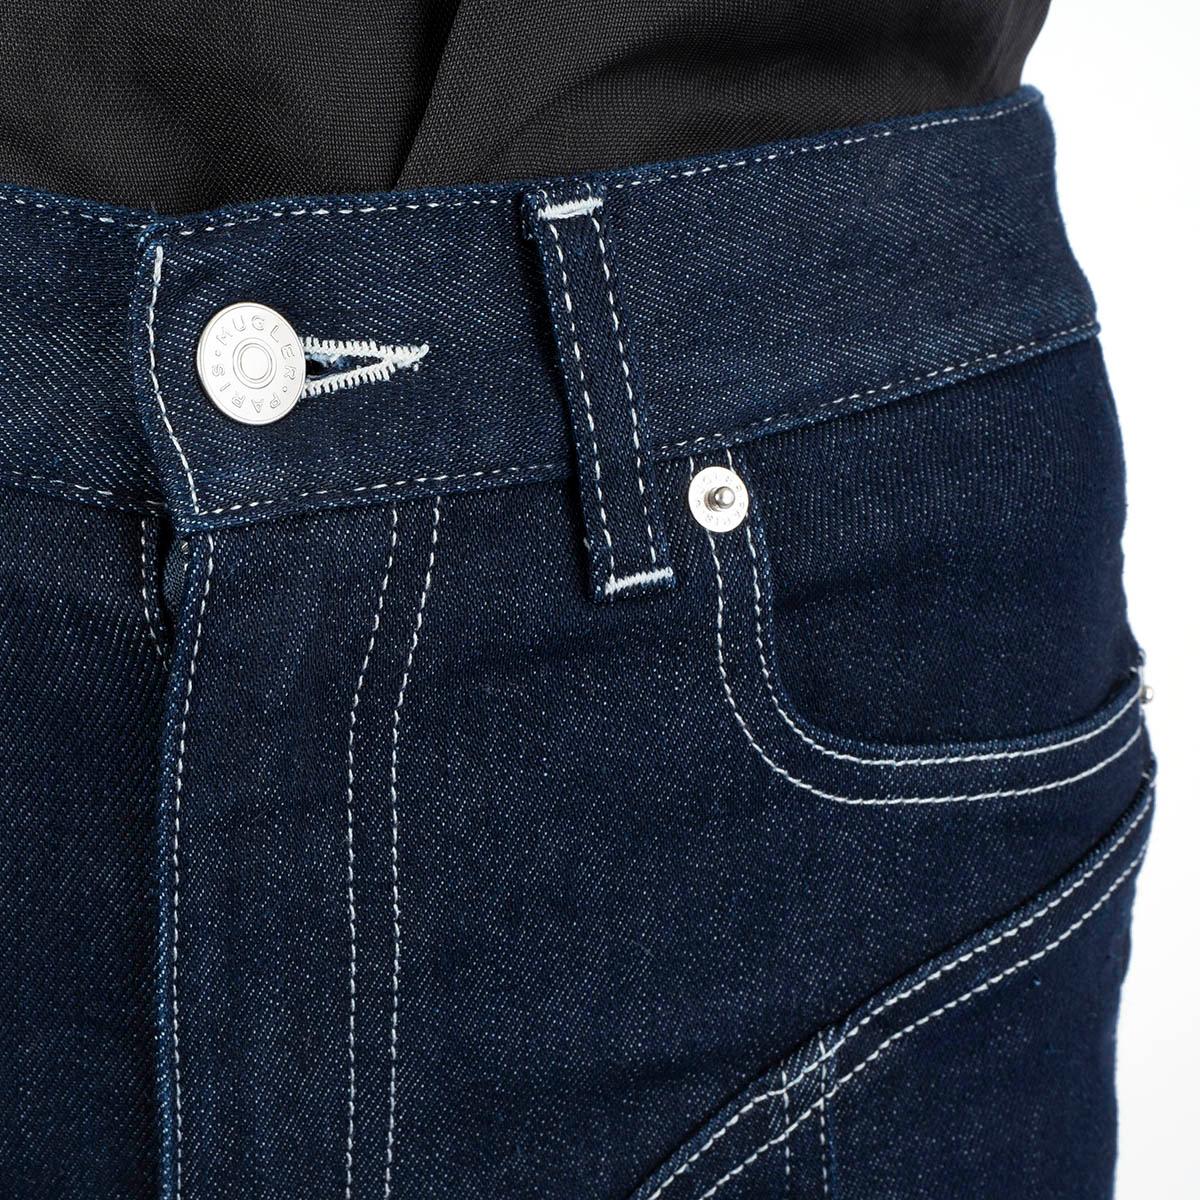 MUGLER Dunkelblaue Baumwoll-Jeans SPIRAL HIGH WAISTED HOT PANTS Shorts 36 XS 2